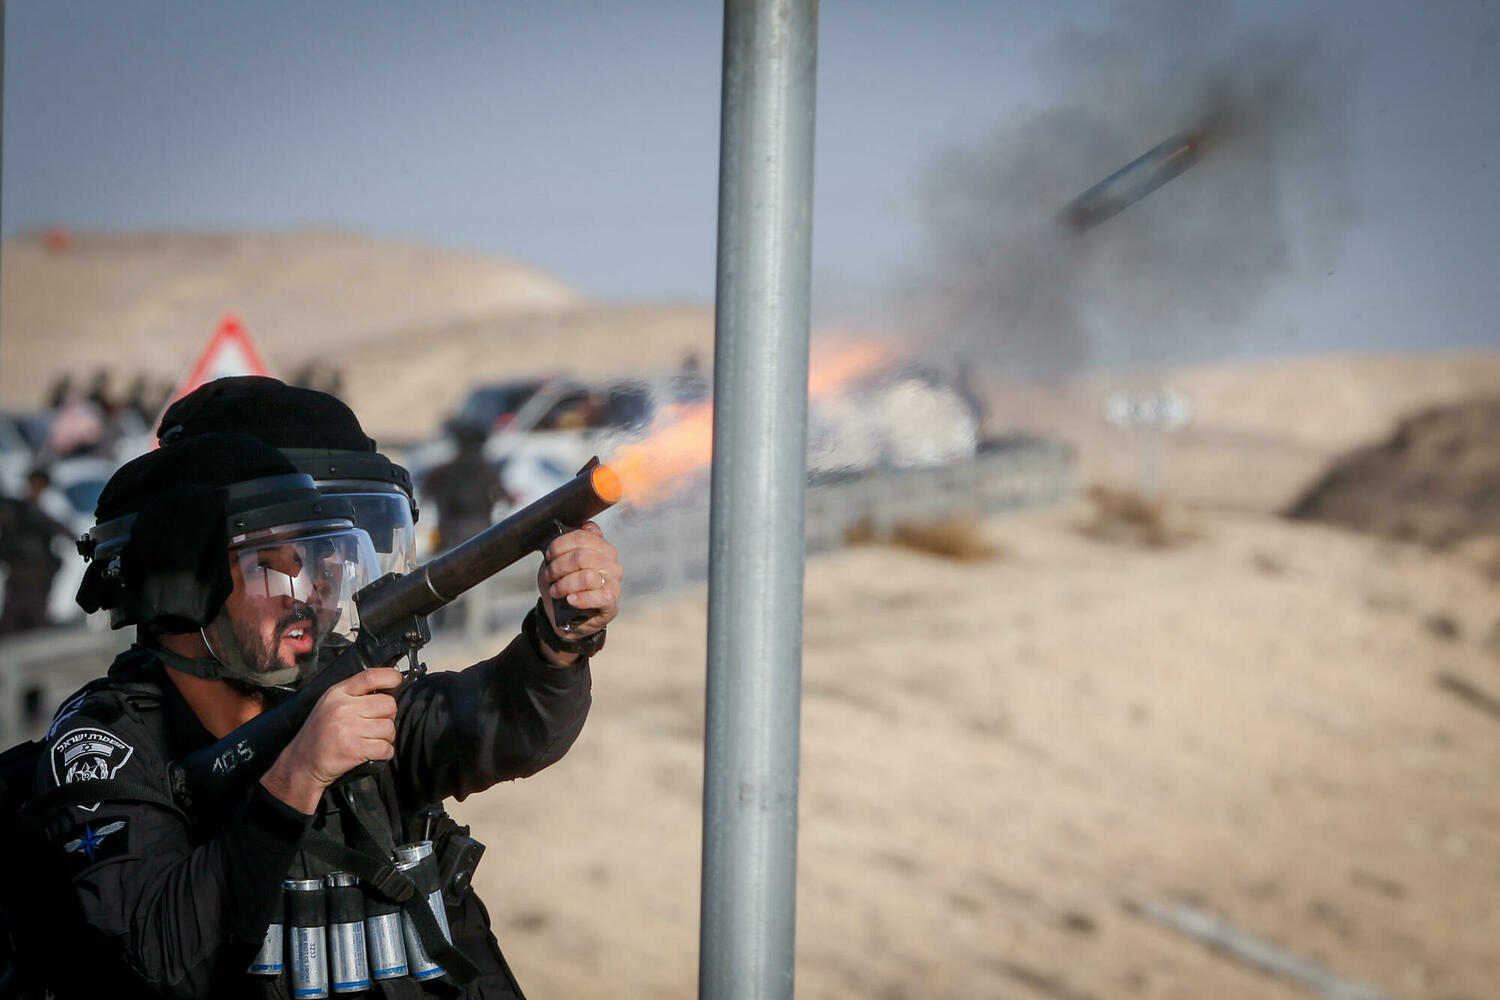 полиция разгоняет бедуинскую демонстрацию 13 января